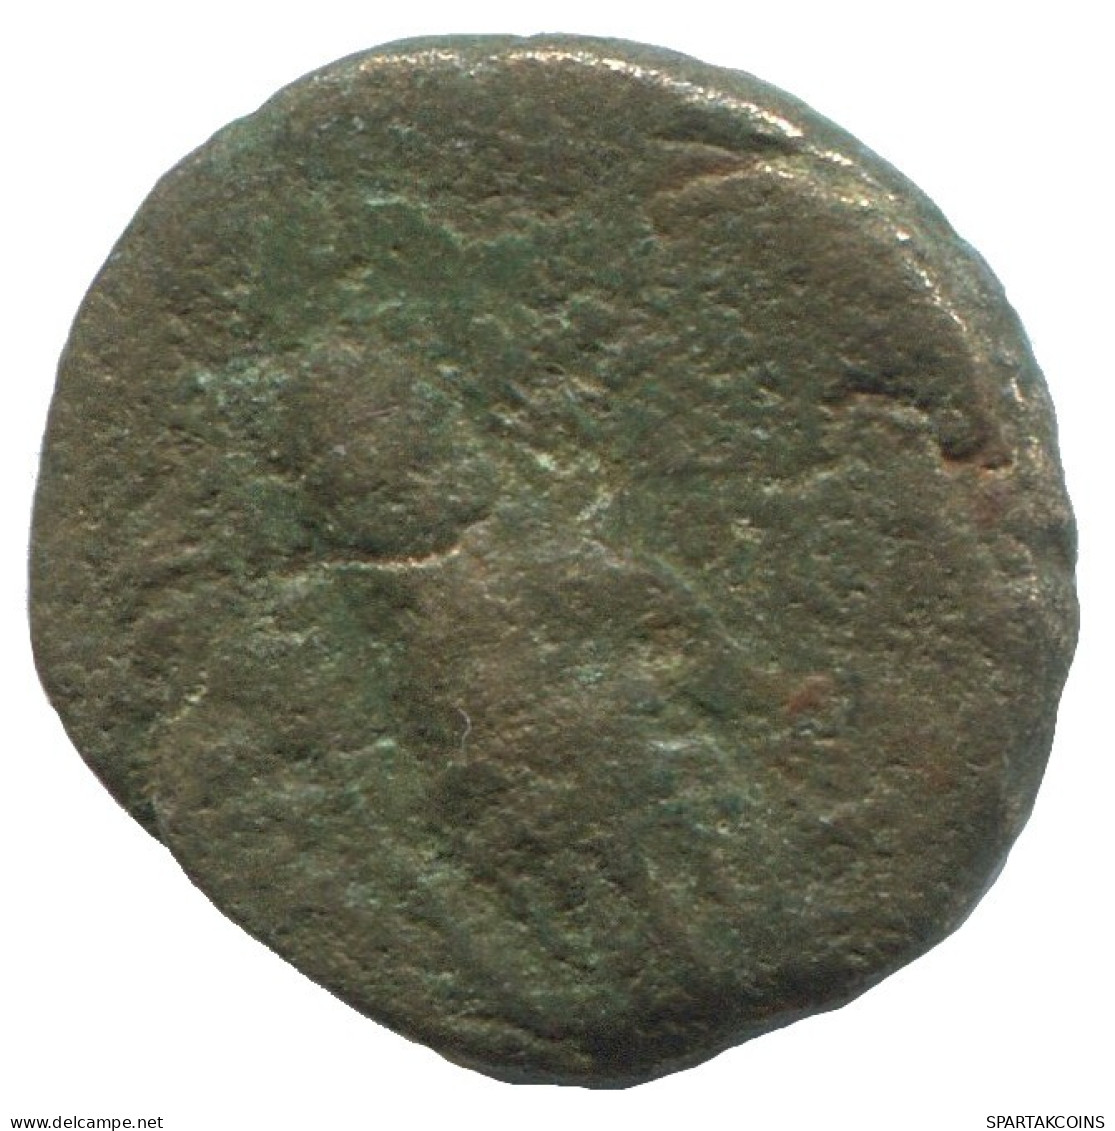 CLUB Authentic Original Ancient GREEK Coin 1.8g/14mm #NNN1173.9.U.A - Greche